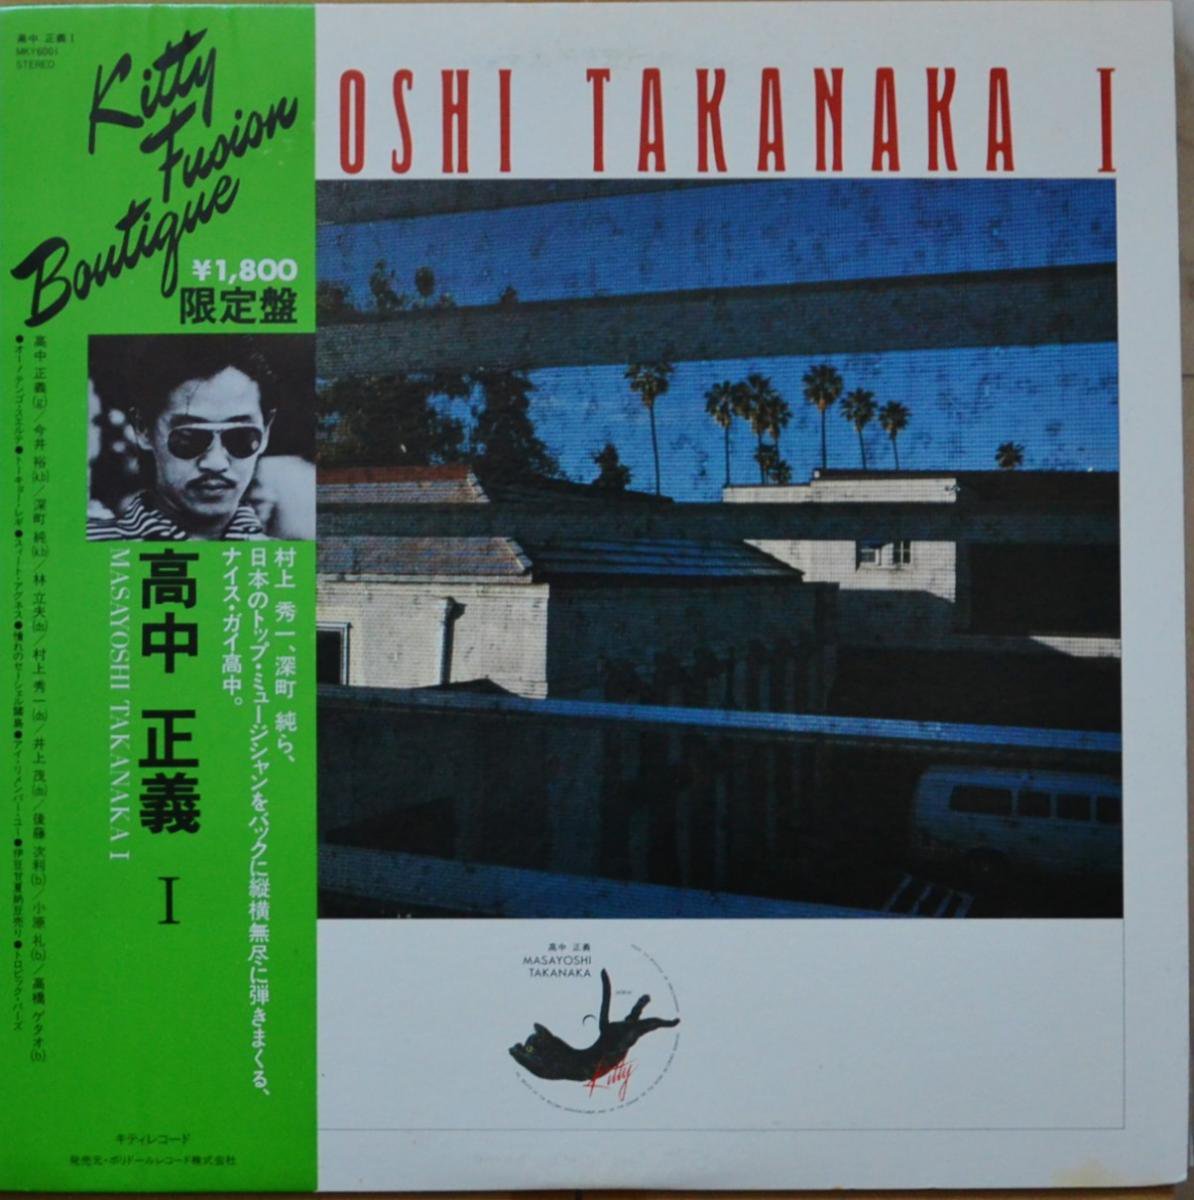 高中正義 MASAYOSHI TAKANAKA / MASAYOSHI TAKANAKA I (LP) - HIP TANK 